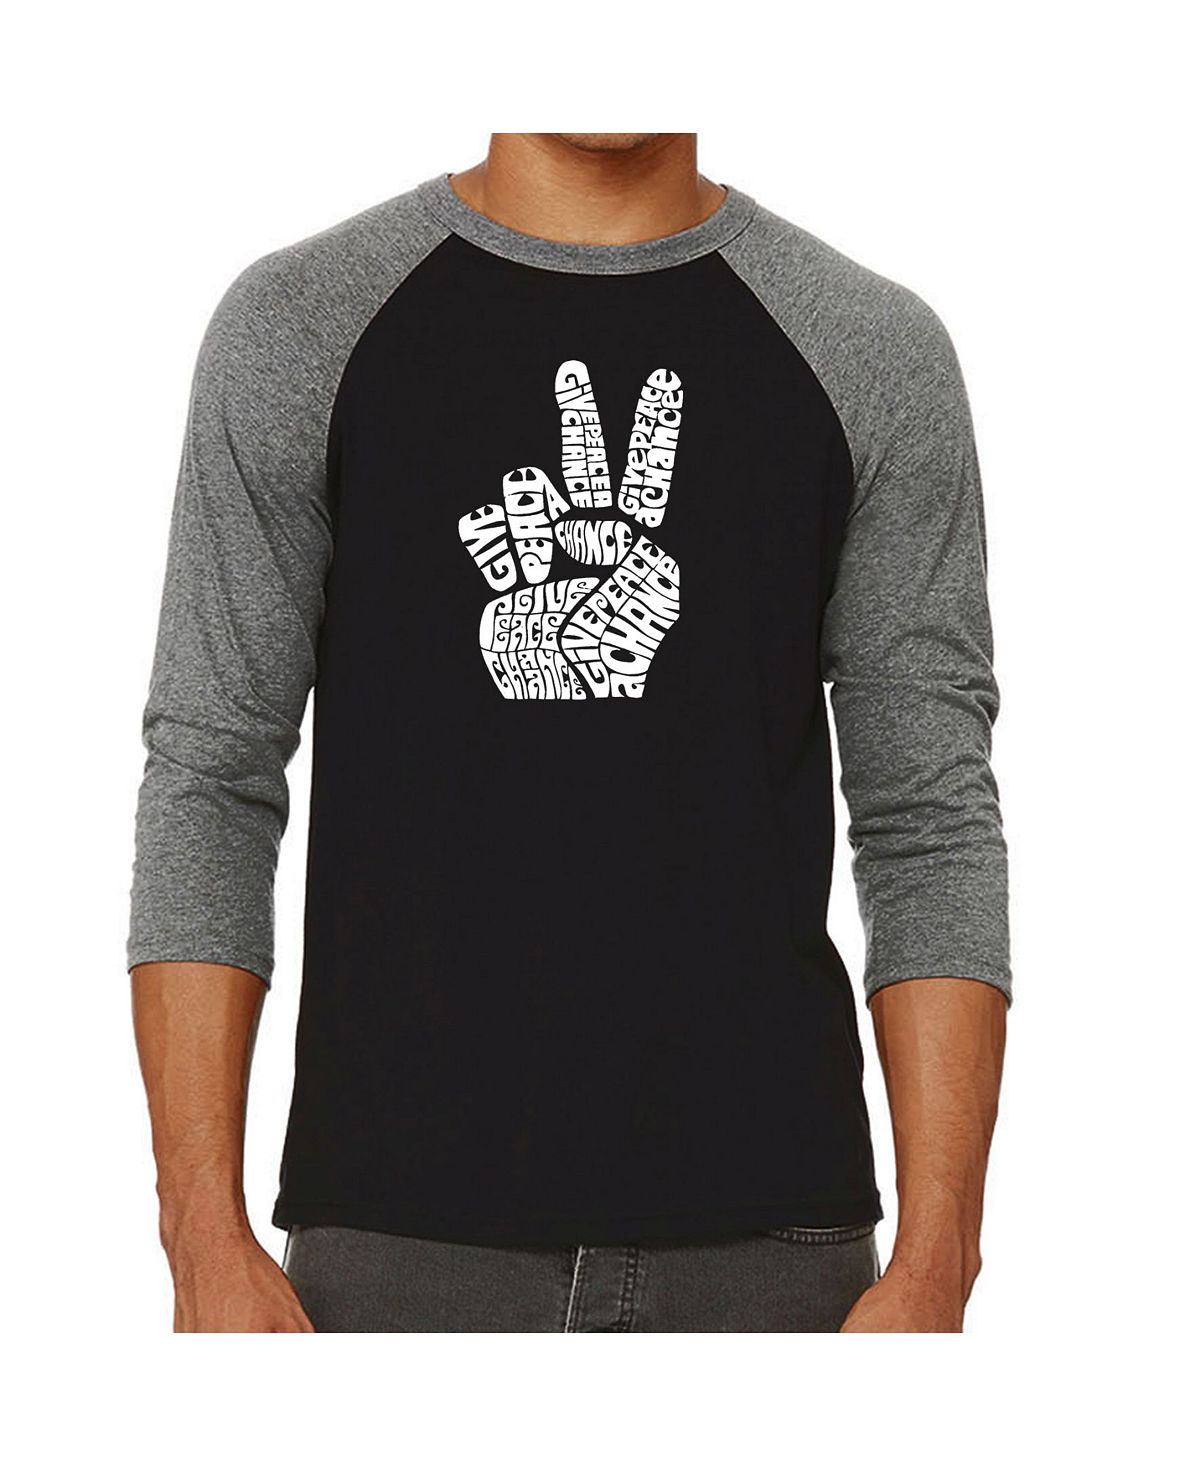 Мужская футболка с регланом word art peace fingers LA Pop Art, серый мужская футболка с бейсбольным регланом word art bear face la pop art мульти